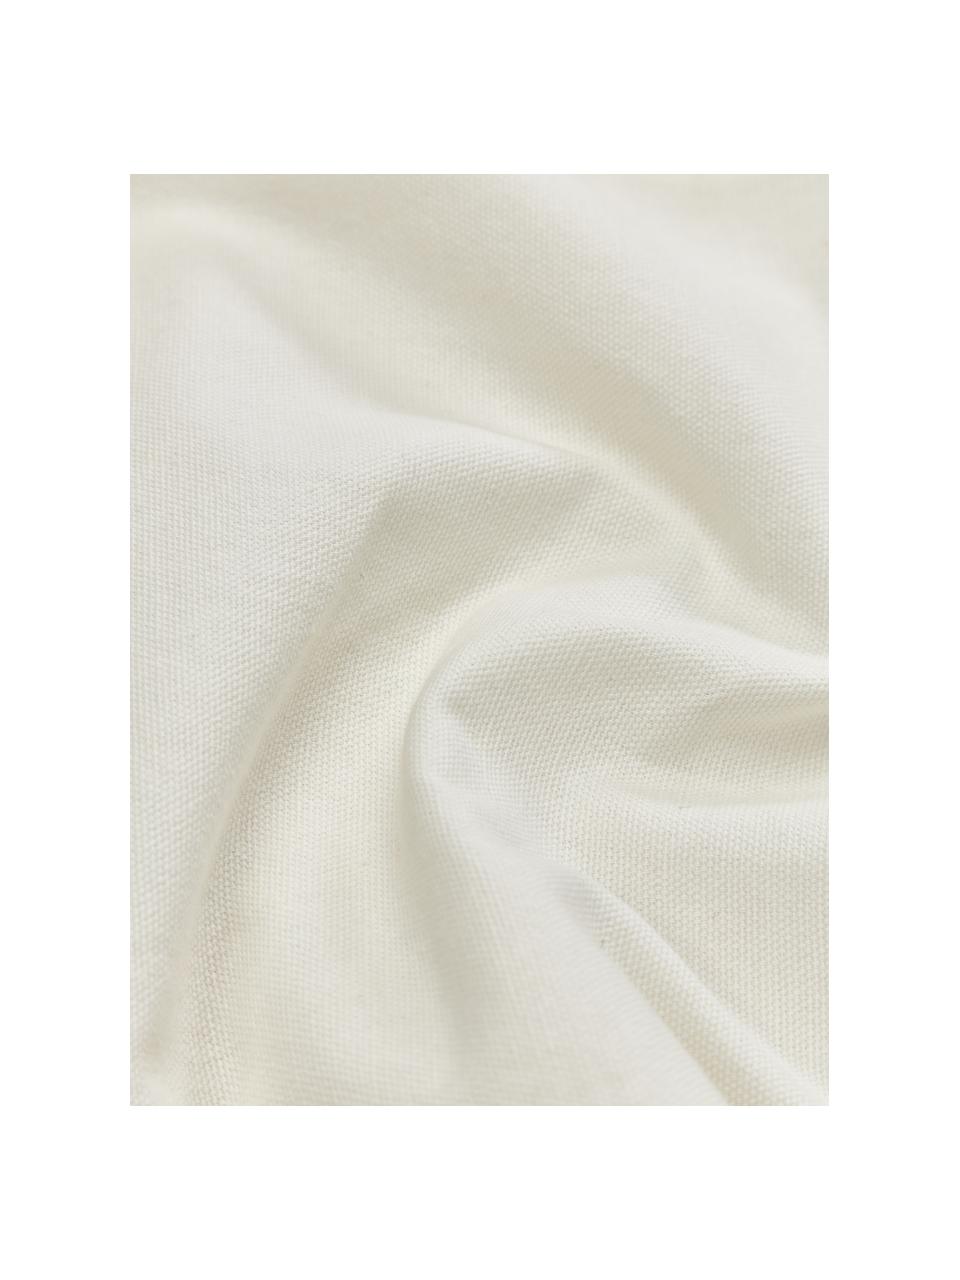 Haftowana poszewka na poduszkę z bawełny z wypukłą strukturą Izad, Tapicerka: 100% bawełna Dekoracja, Brązowy, czarny, kremowobiały, S 45 x D 45 cm